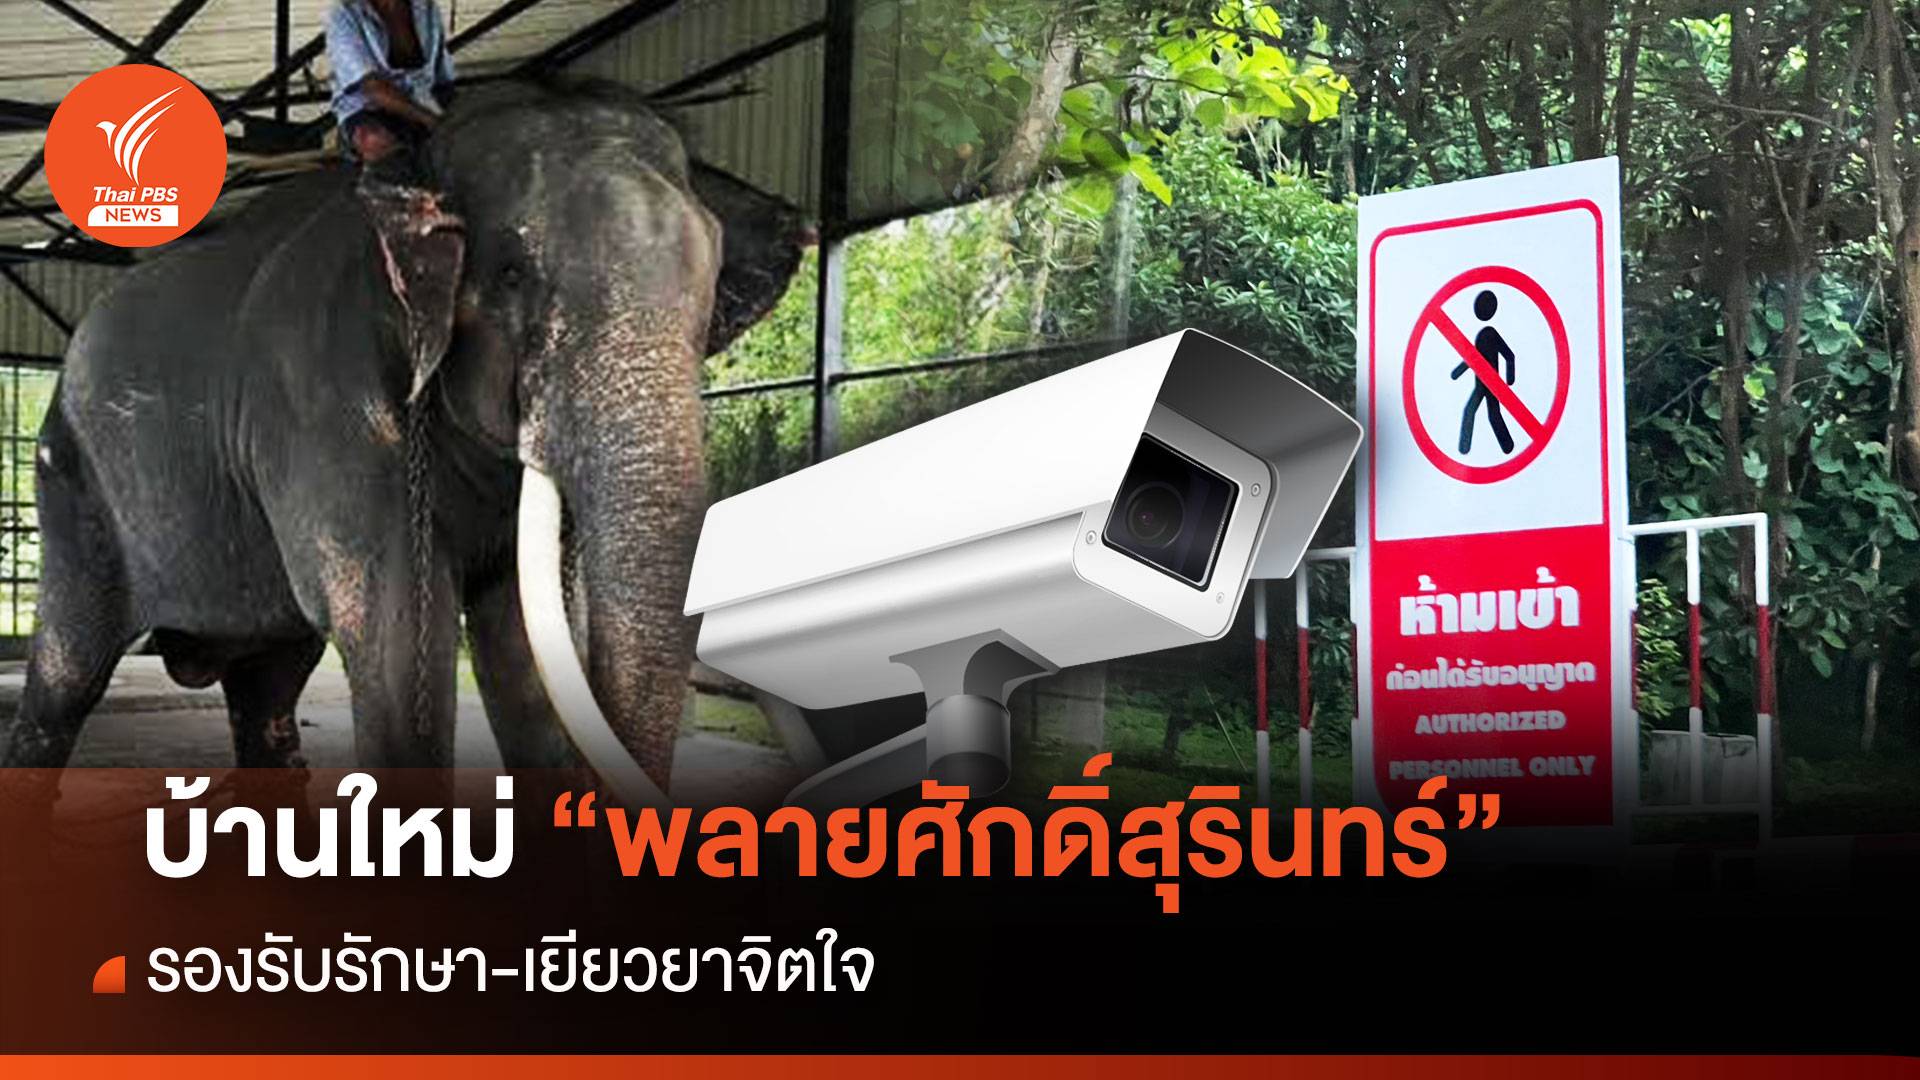 สำรวจจุดกักโรค-บ้านใหม่ศูนย์ช้างลำปางรับ  "พลายศักดิ์สุรินทร์" ถึงไทย 2 ก.ค.